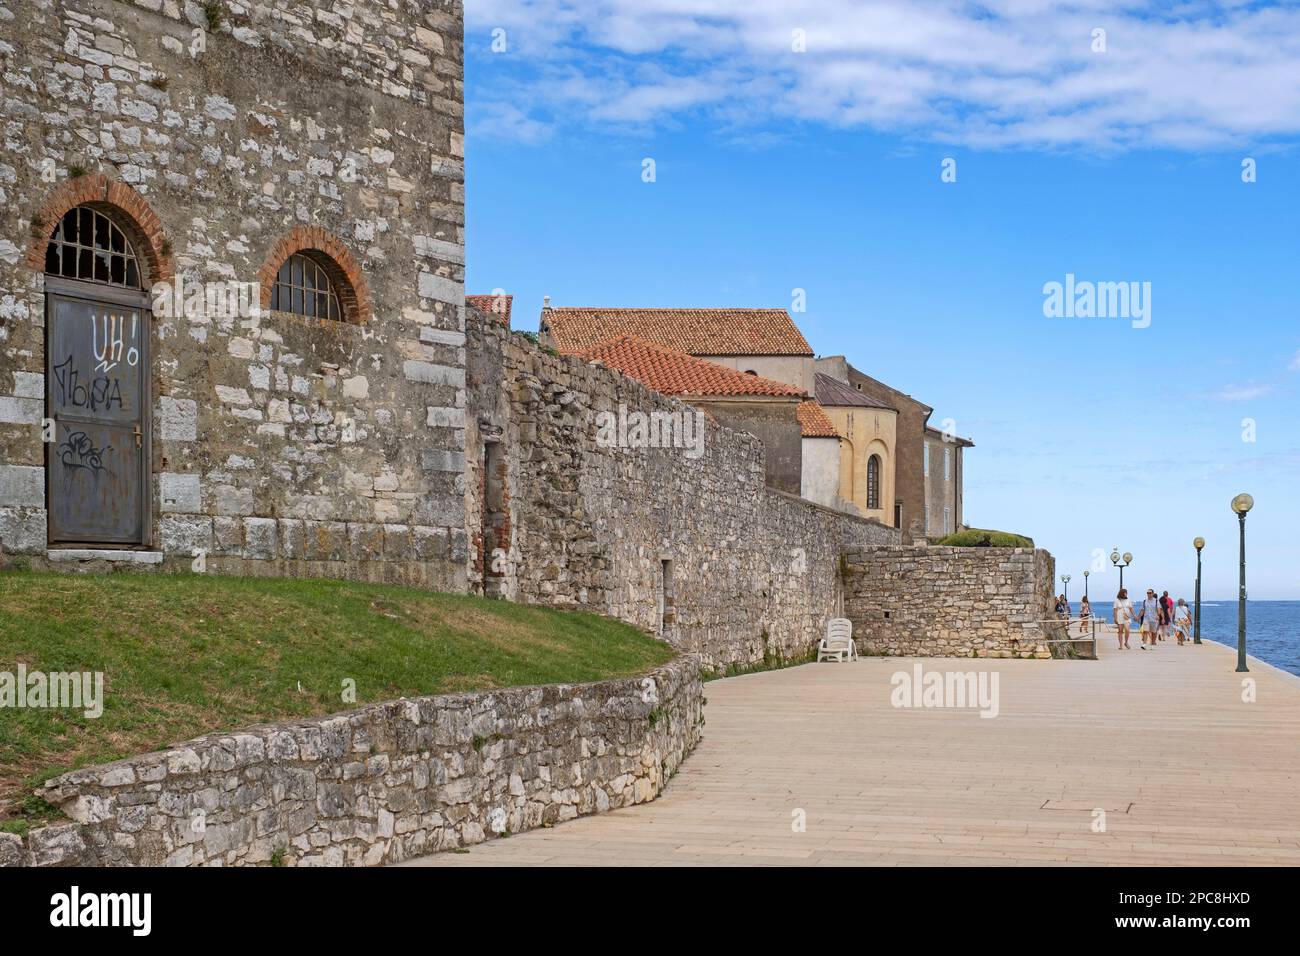 Touristen, die auf der Promenade entlang der alten Stadtmauer in der Stadt Poreč/Parenzo spazieren, Strandresort an der Adria, Kreis Istrien, Kroatien Stockfoto